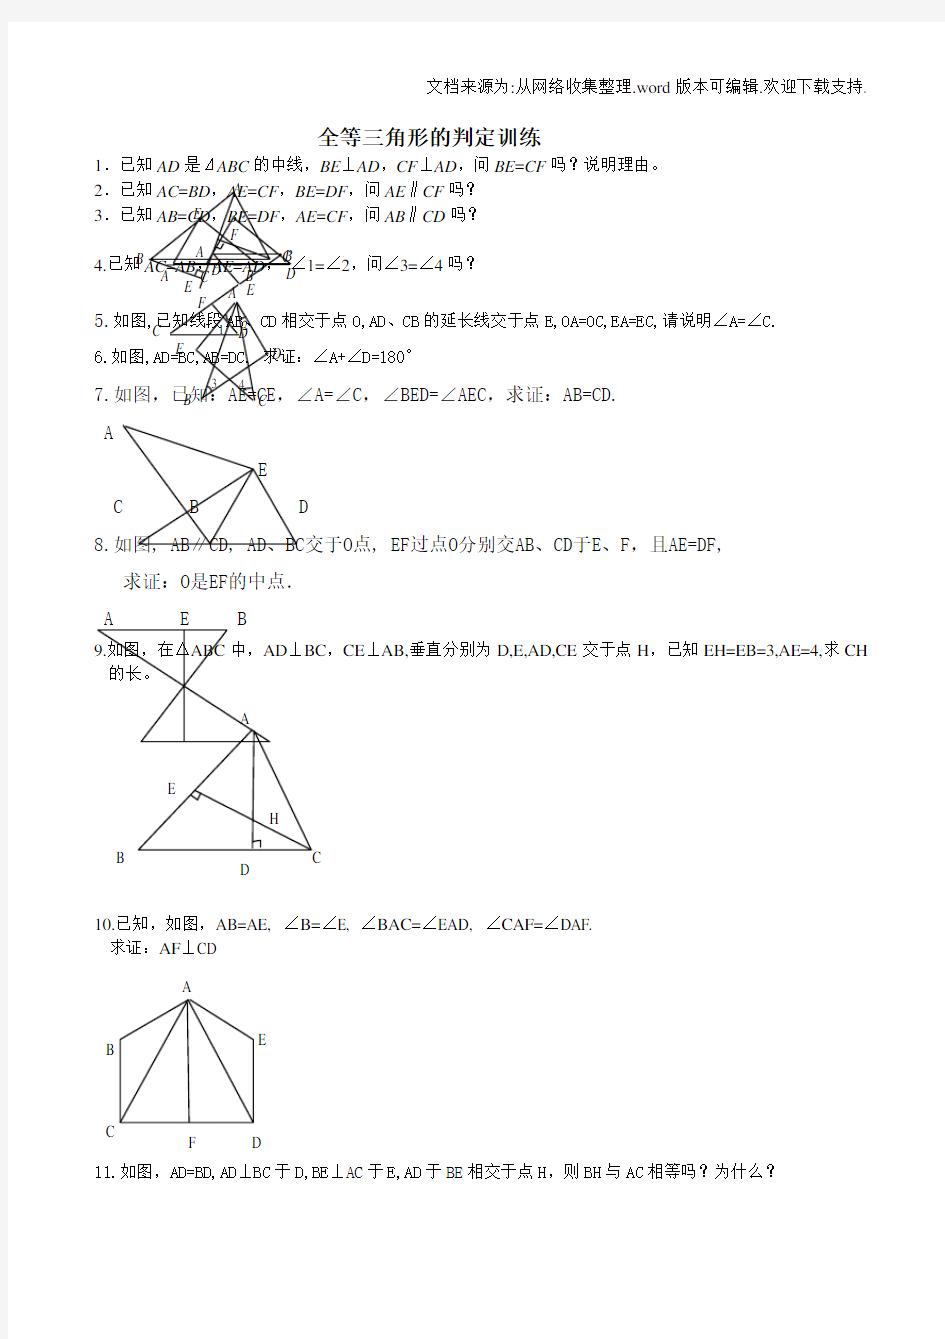 全等三角形典型例题(供参考)